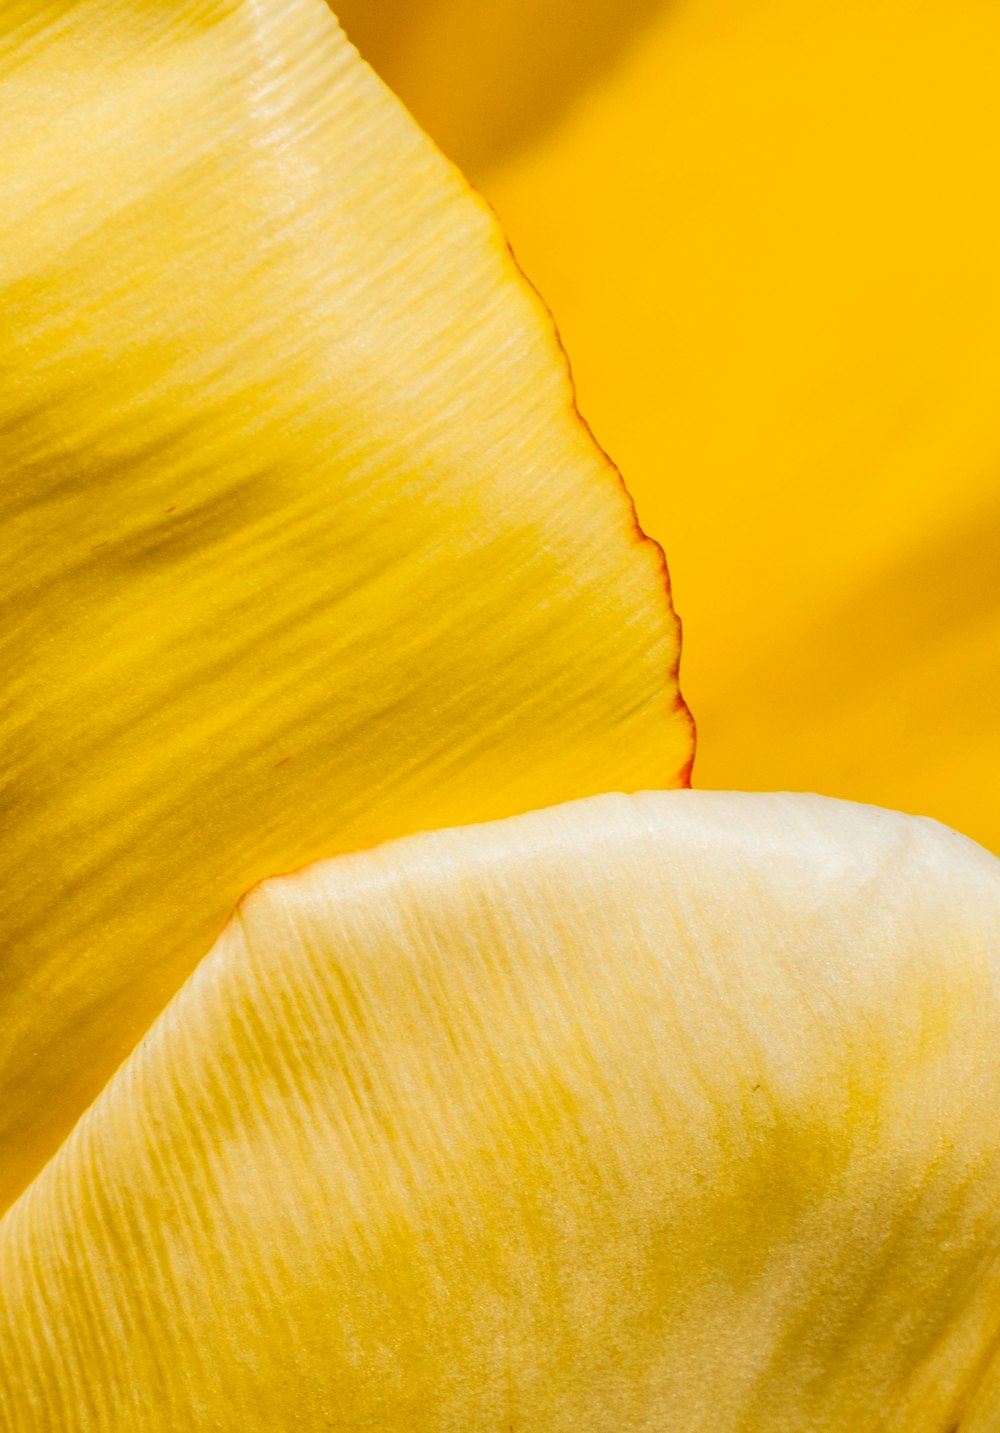 a close up of a yellow and orange potato